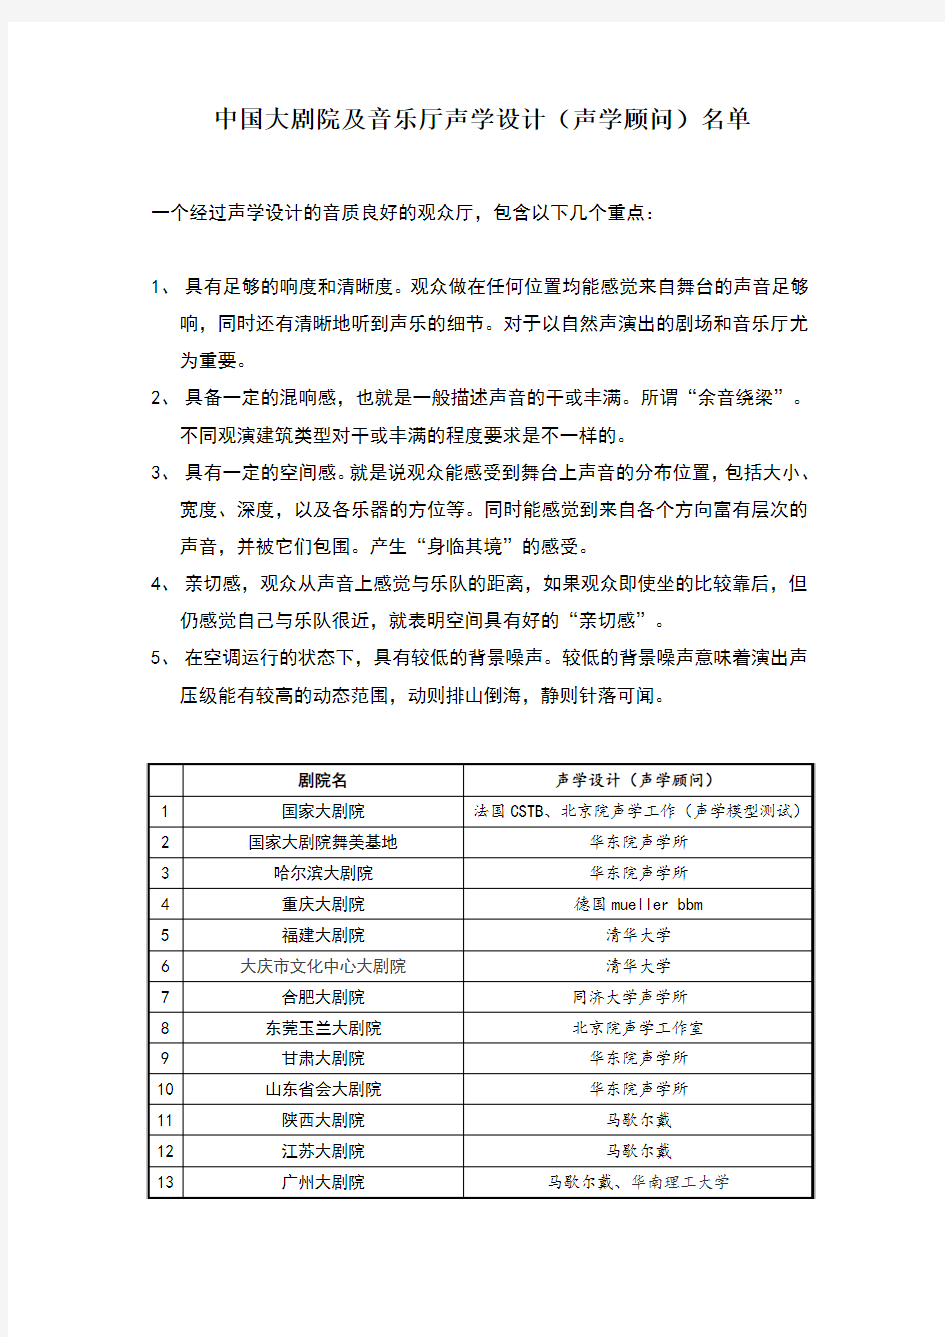 中国大剧院及音乐厅声学设计(声学顾问)名单